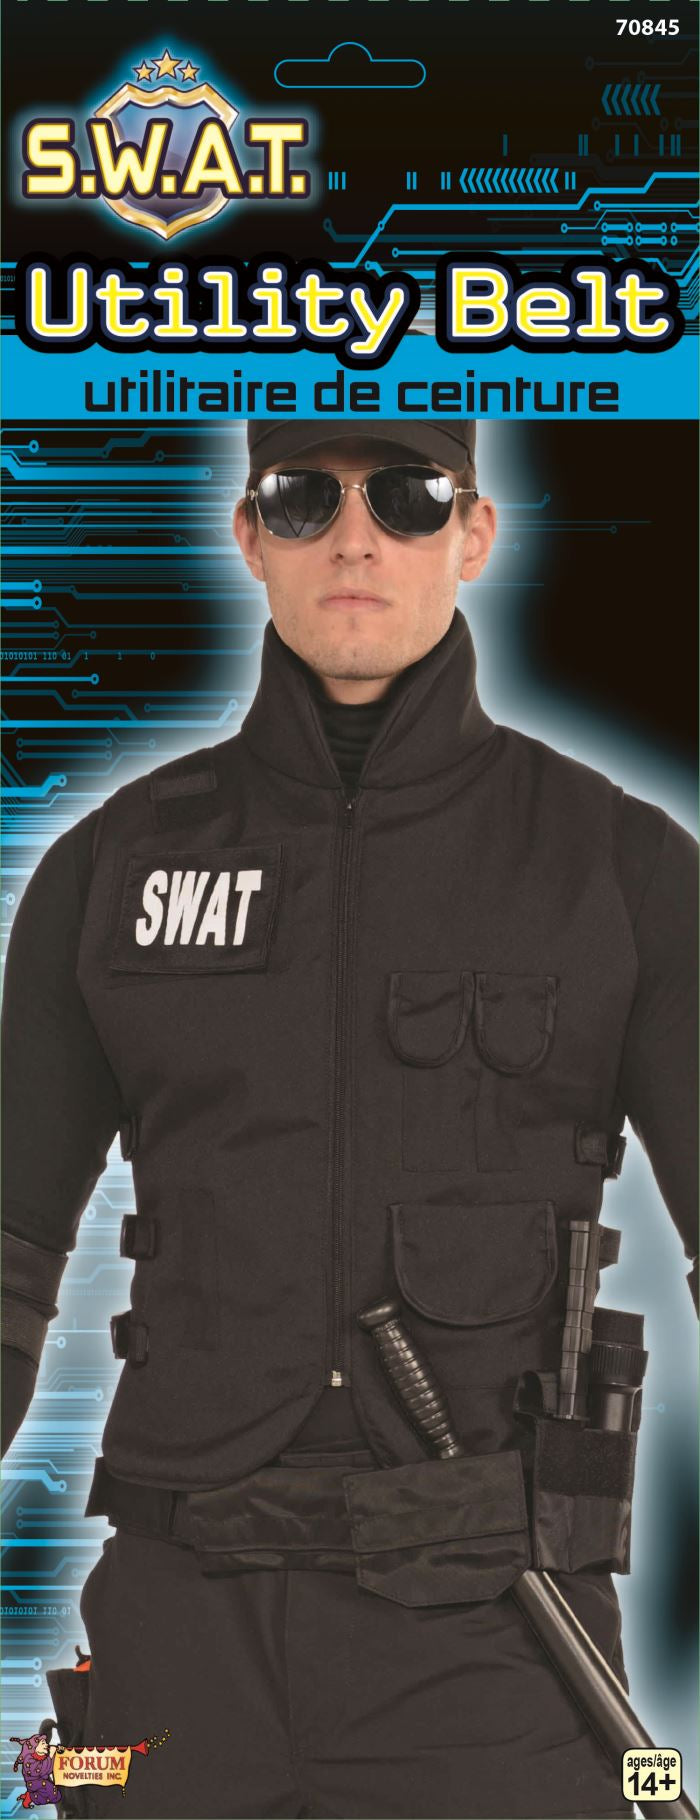 SWAT Utility Belt